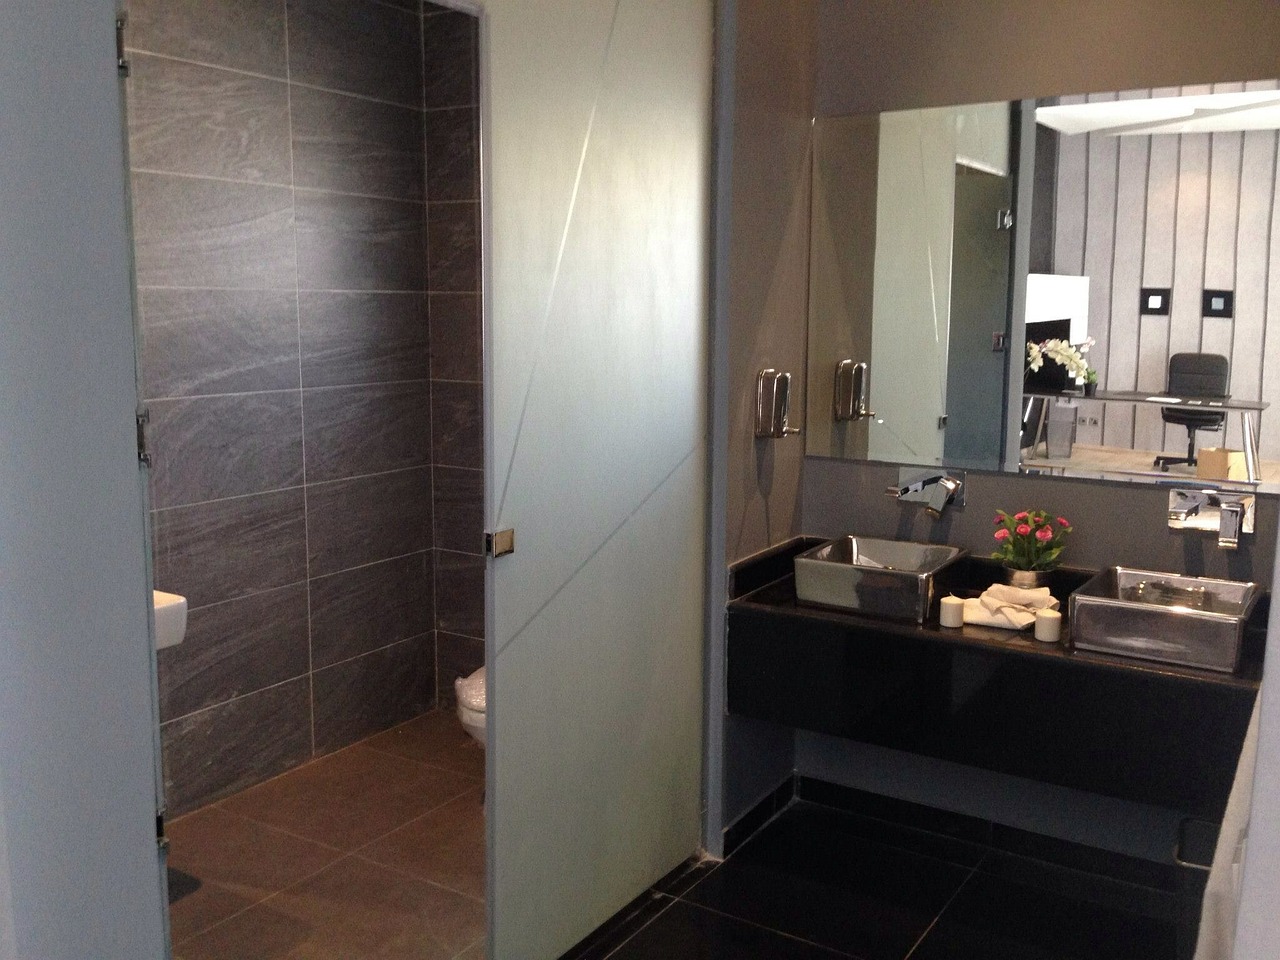 Klasyczna elegancja w łazience: Ponadczasowe wzornictwo i rafinowane detale.